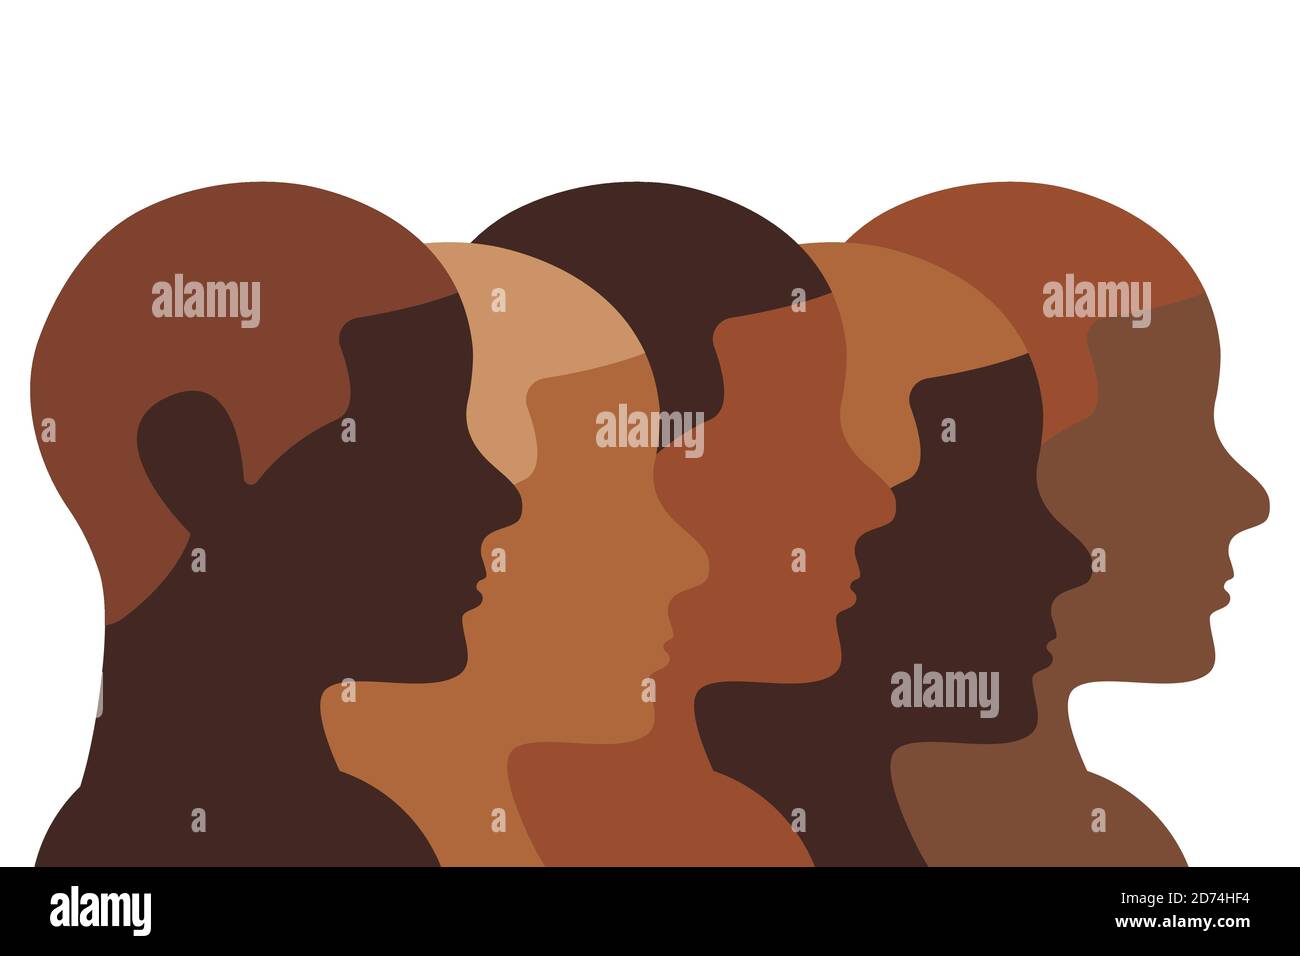 Illustration für afrikanische Menschen. Braune und schwarze menschliche Köpfe Profile in einer Reihe zeigen Vielfalt ihrer Hautfarbe. Linienkunst Stock Vektor